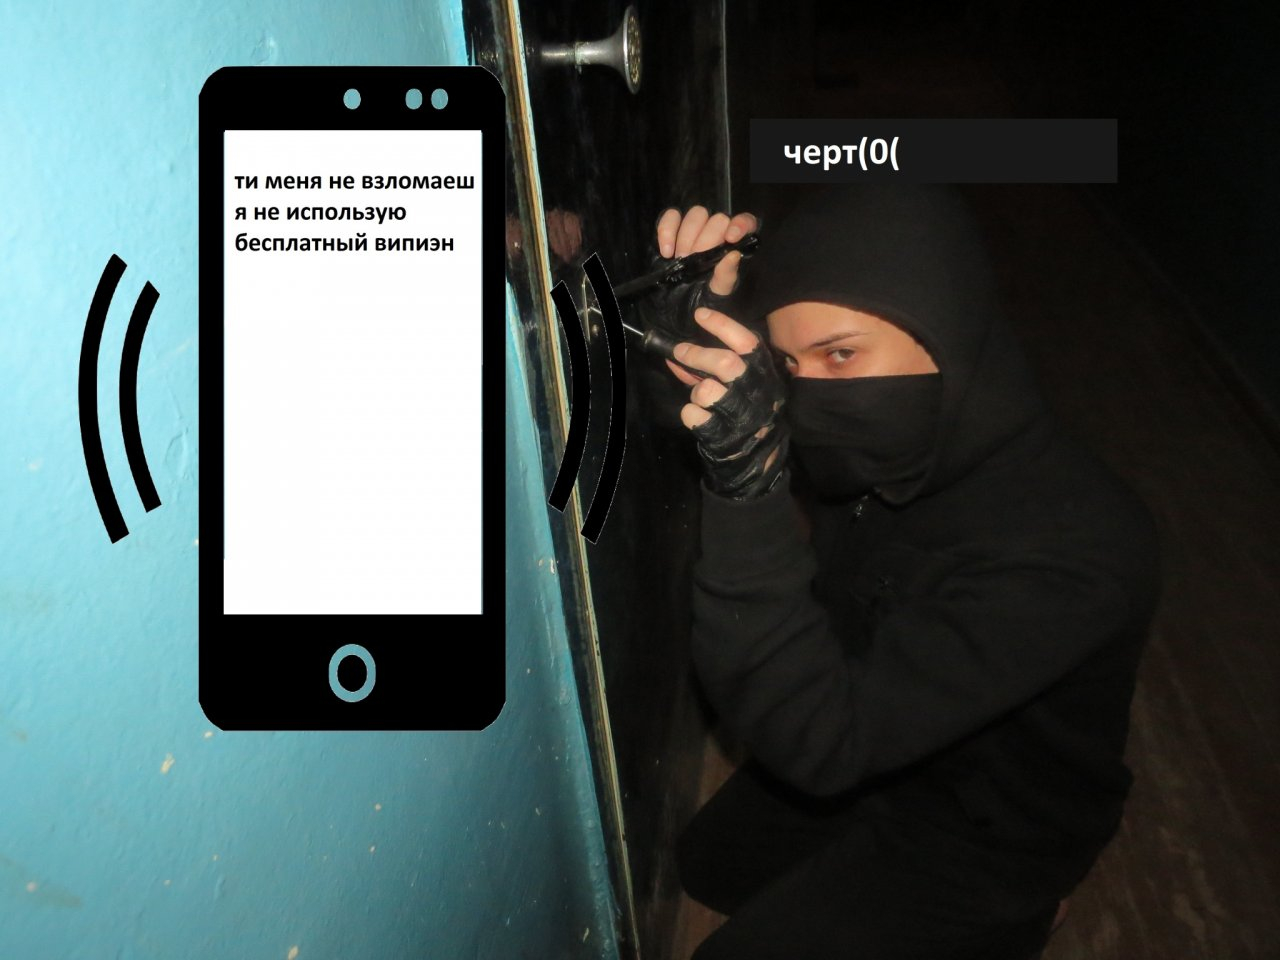 Лайфхак от Роскачества для защиты аккаунта: "Используйте VPN". Мы бы рады, только его запретили